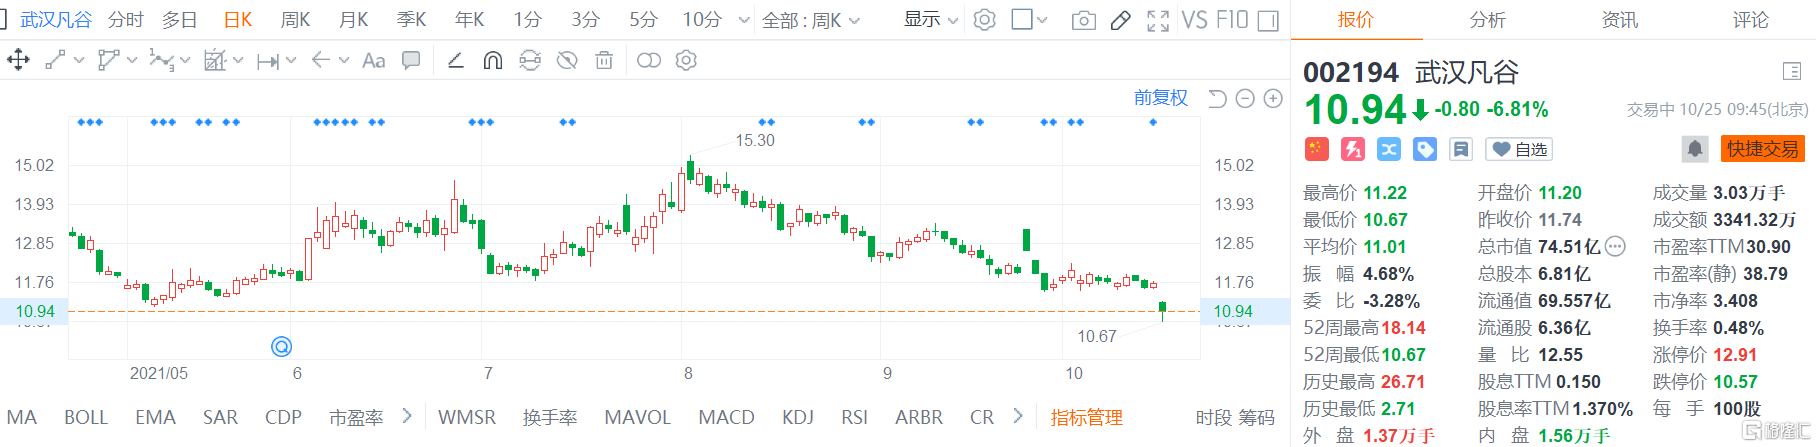 武汉凡谷(002194.SZ)股价低开低走，盘中最低见10.67元创2019年5月份以来新低